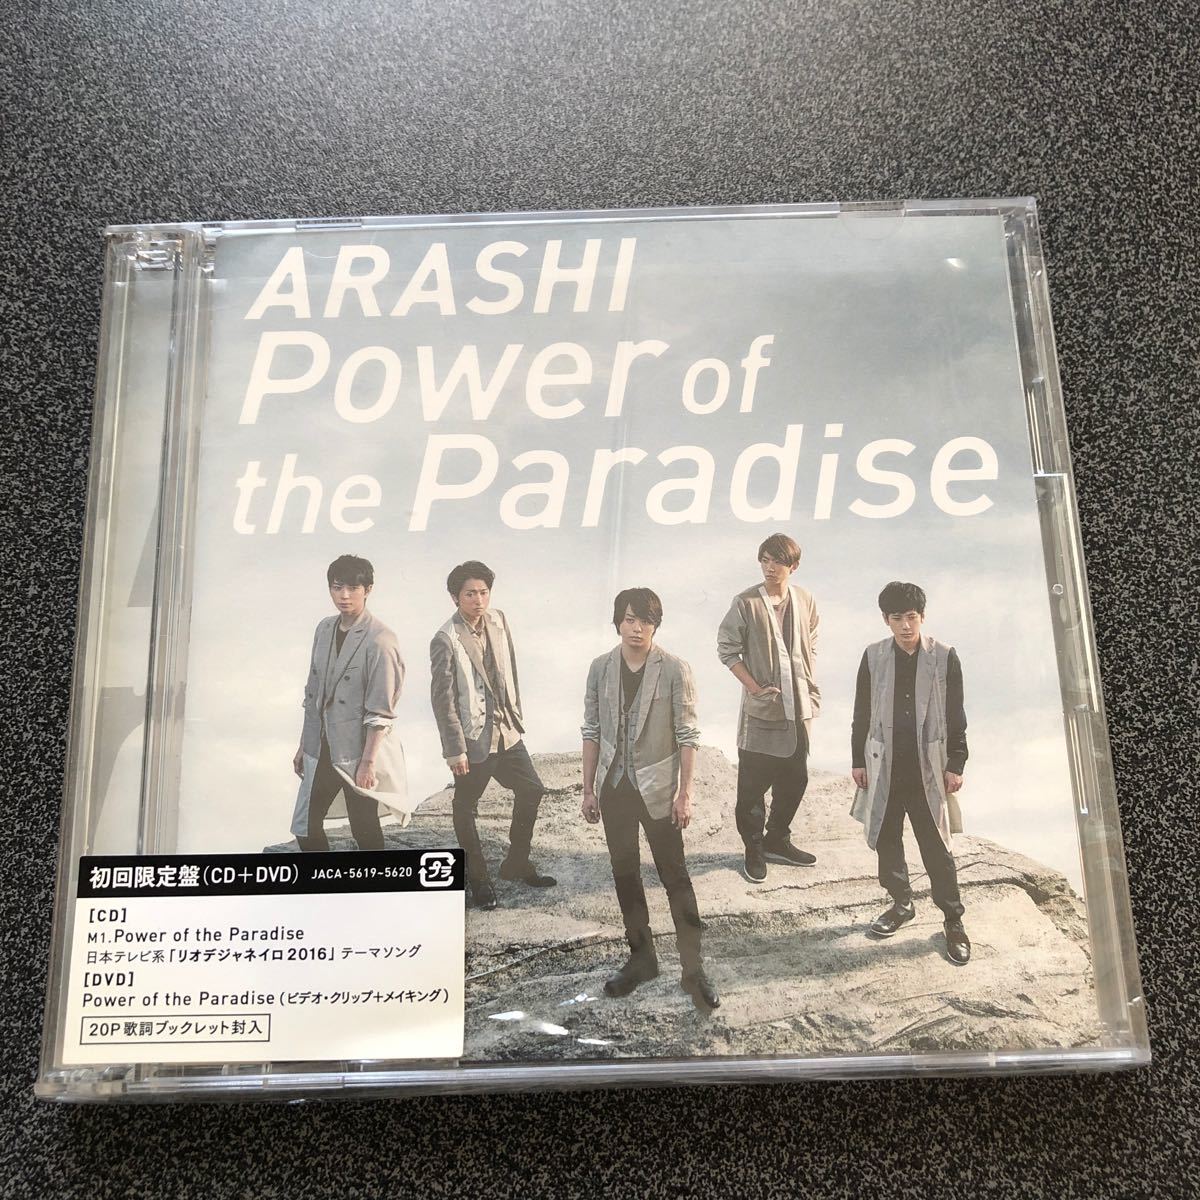 嵐POWERoftheParadise 初回限定盤 CD+DVD シングル 嵐CD